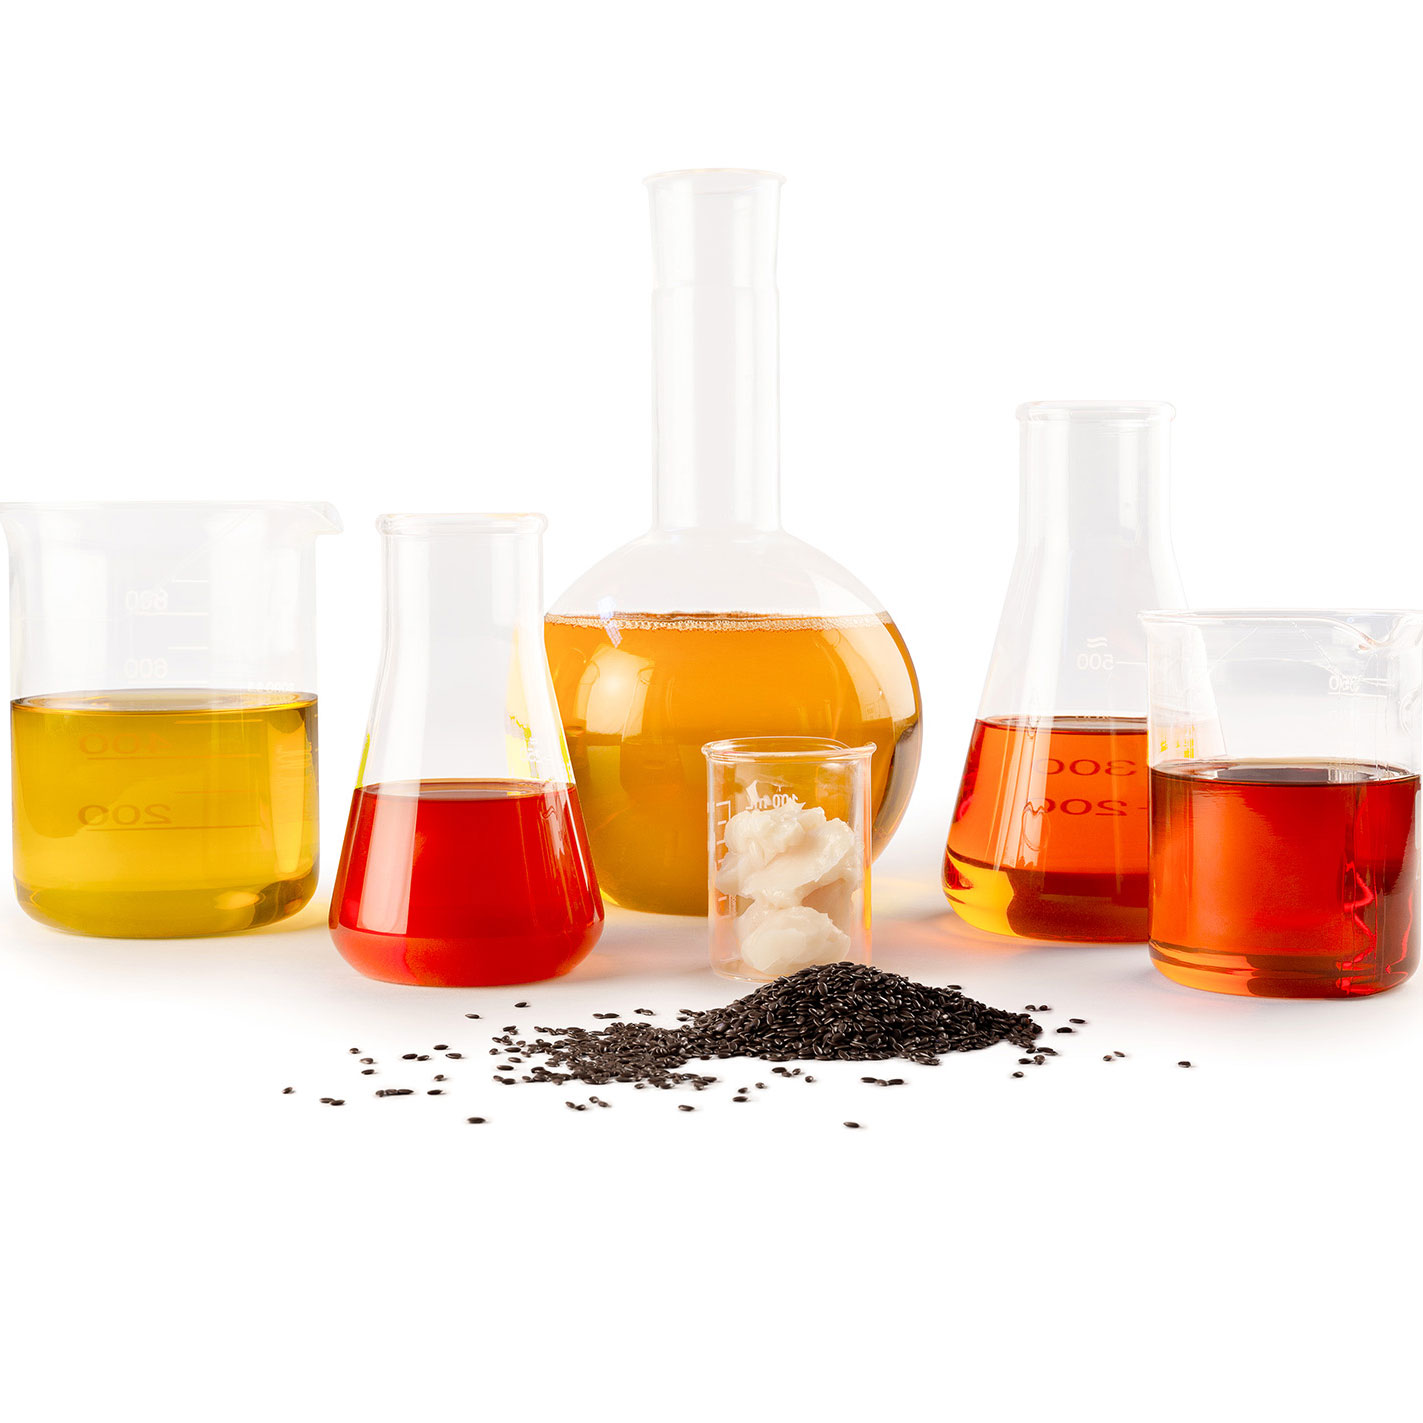 Olika produkter som alla består av linolja. Olja, fernissa, vax, lack och såpa.